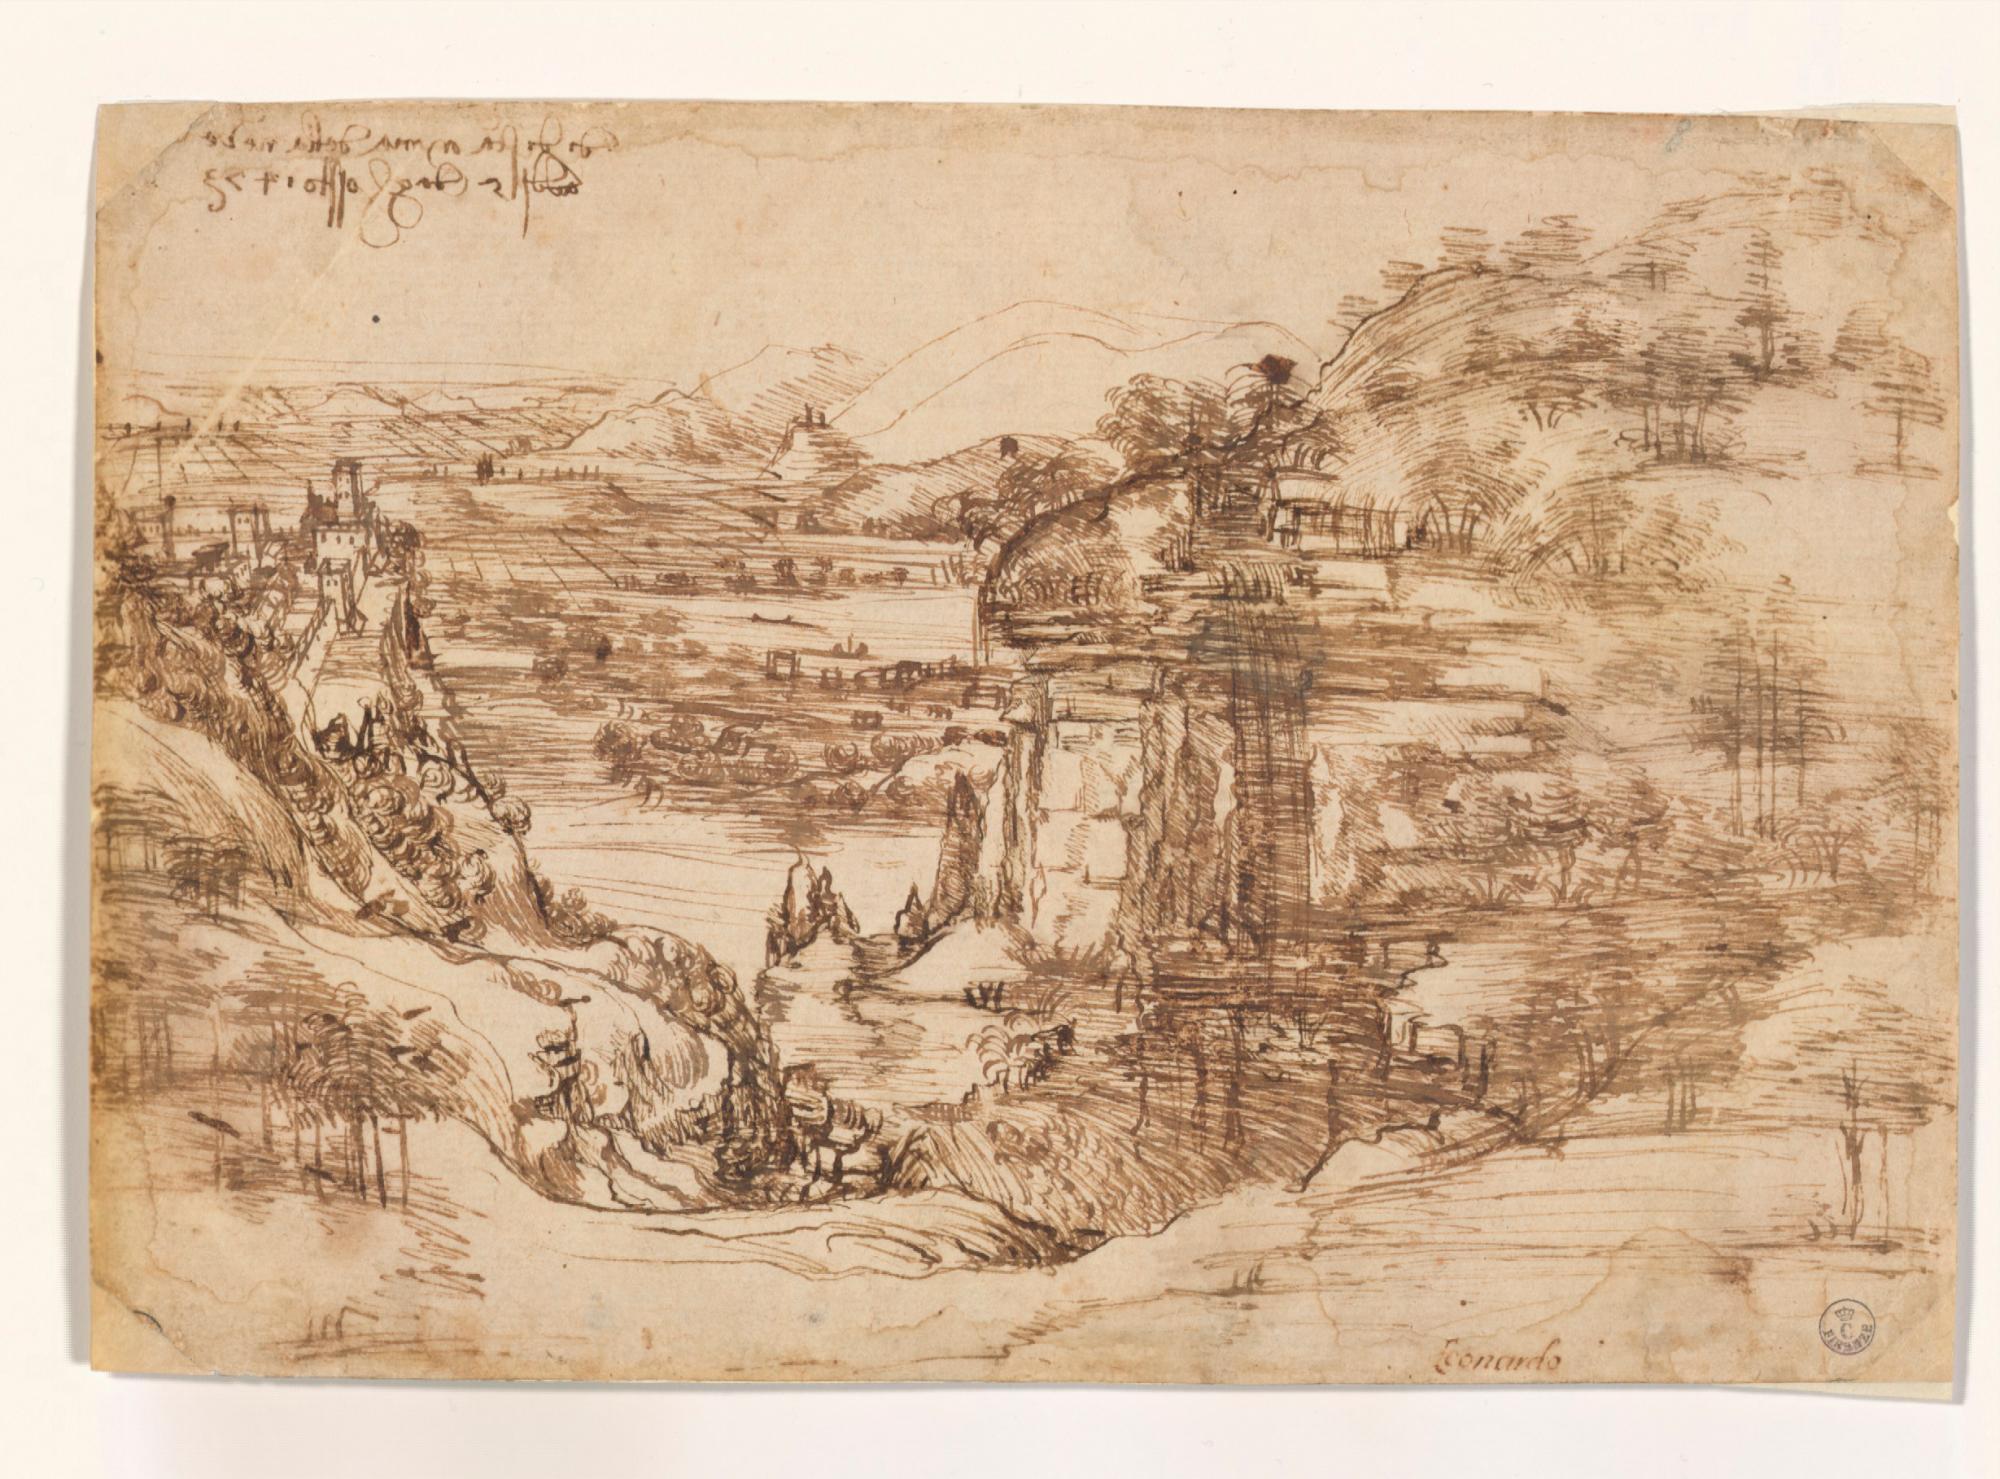 Primer paisaje dibujado por Leonardo da Vinci, propiedad de la Galería de los Uffizi de Florencia. 